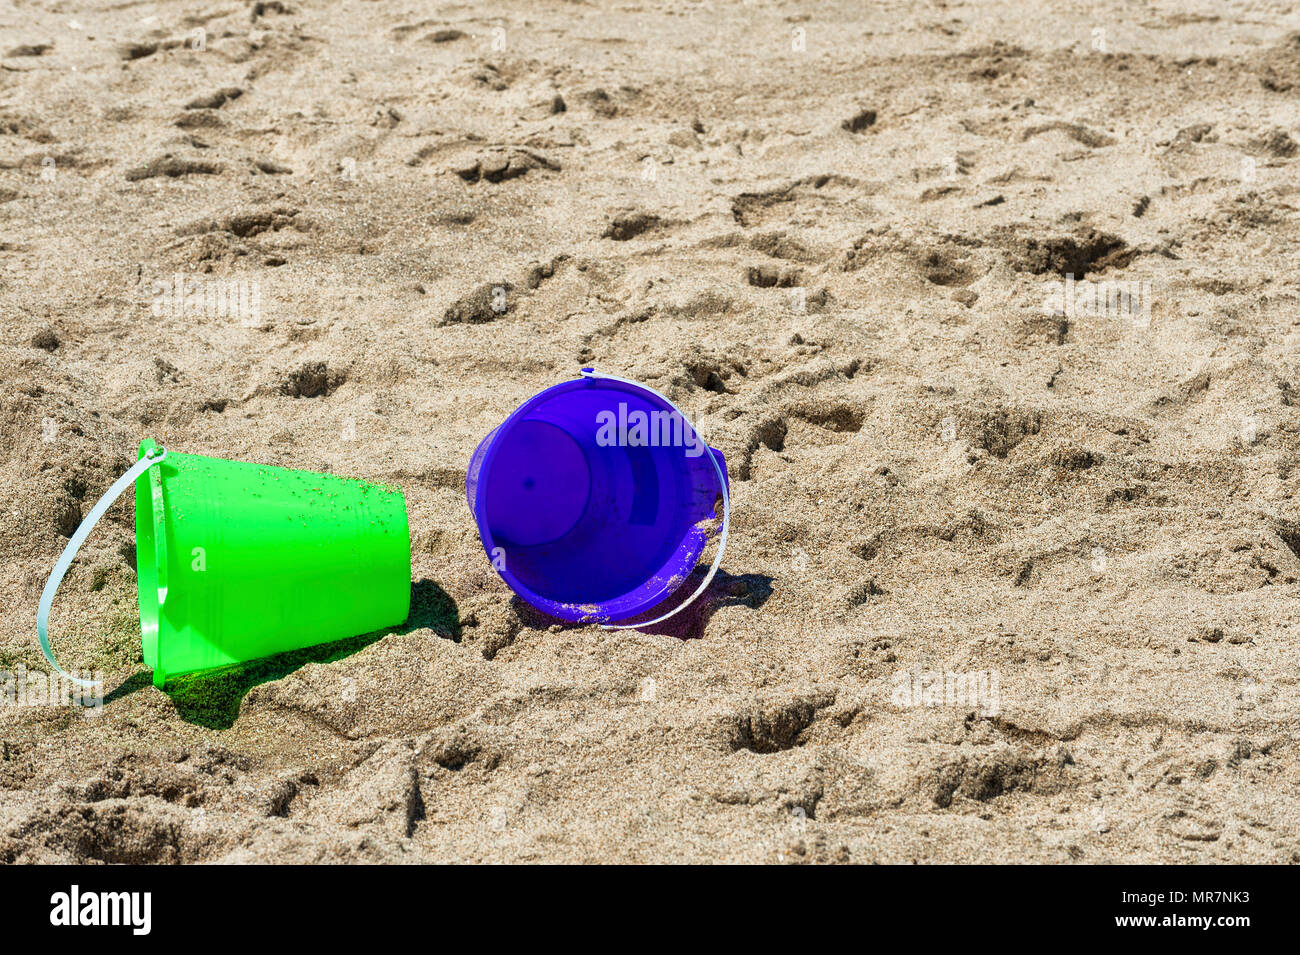 Closeup y copyspace de dos jugar cubos uno verde la otra morada quedó tendido en la playa de arena Foto de stock